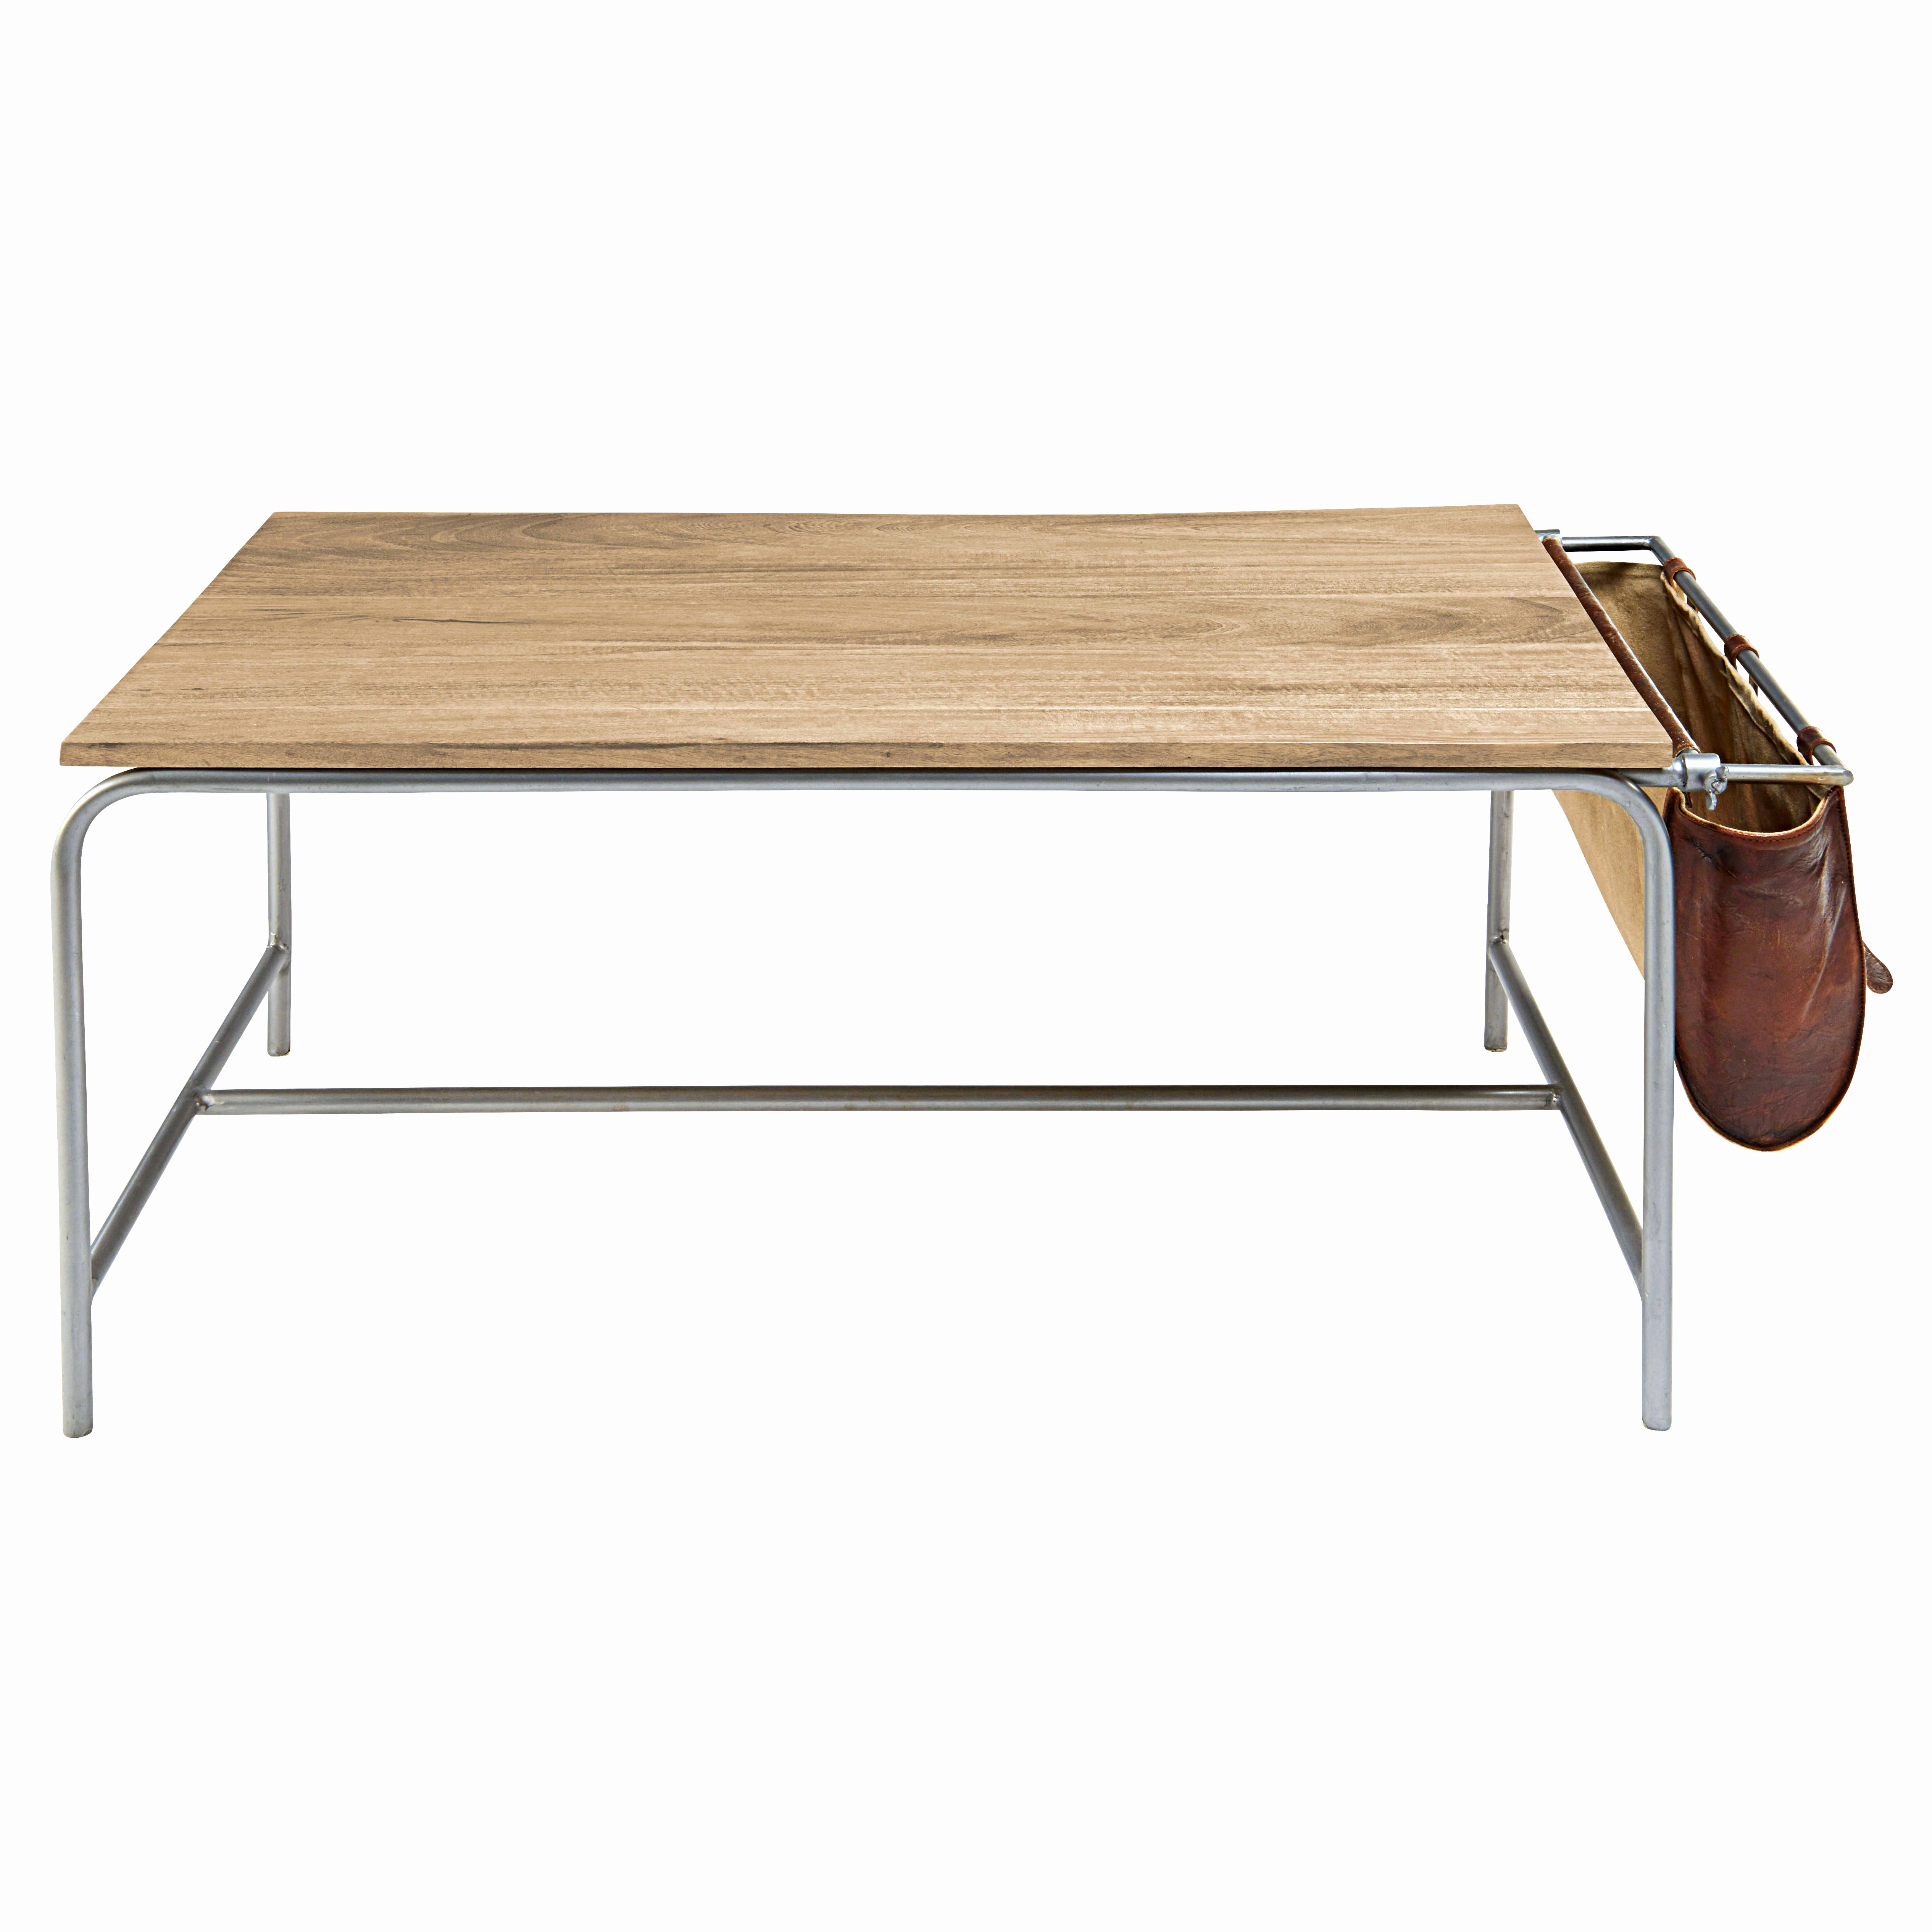 Table basse bois exotique metal